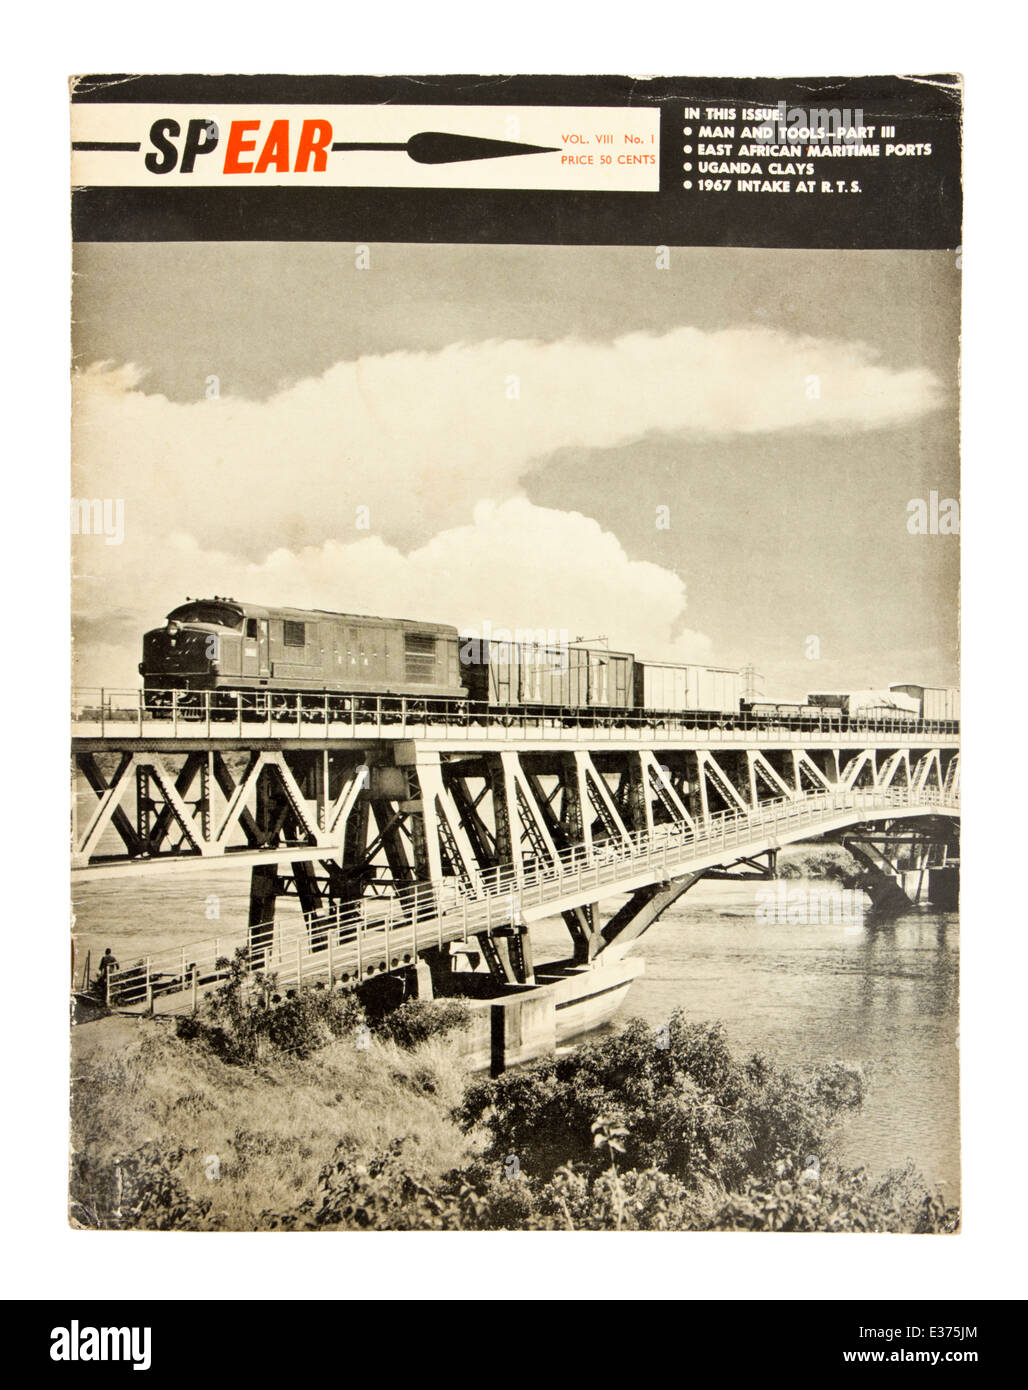 Seltene 1967 (Band VIII, Nr. 1) Kopie der "Speer", ein Magazin über East African Railways and Harbours. Stockfoto